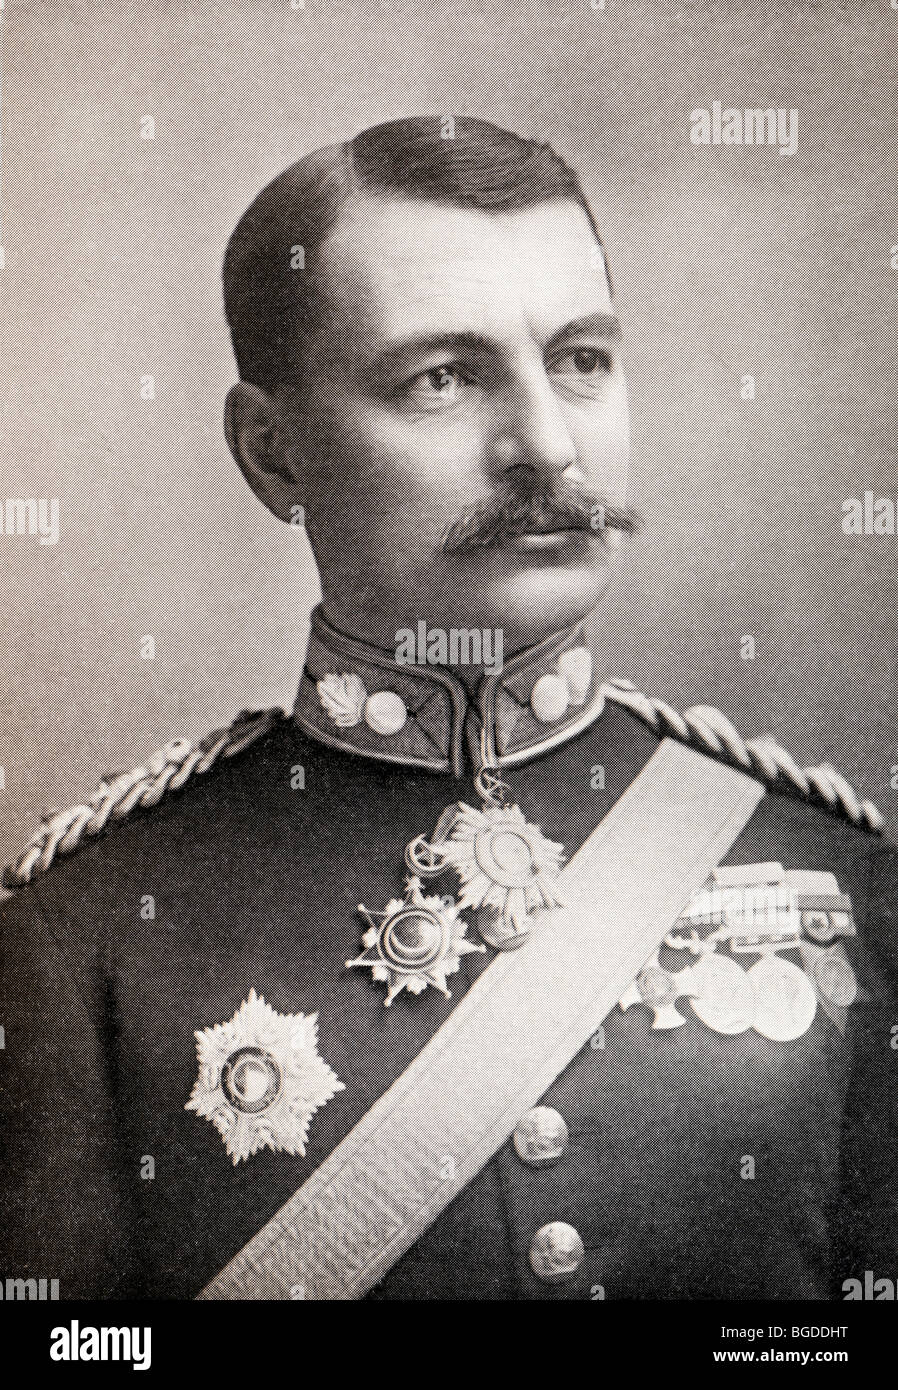 Sir Henry Macleod Leslie Rundle, 1856 to 1940. British Army general. Stock Photo - sir-henry-macleod-leslie-rundle-1856-to-1940-british-army-general-BGDDHT